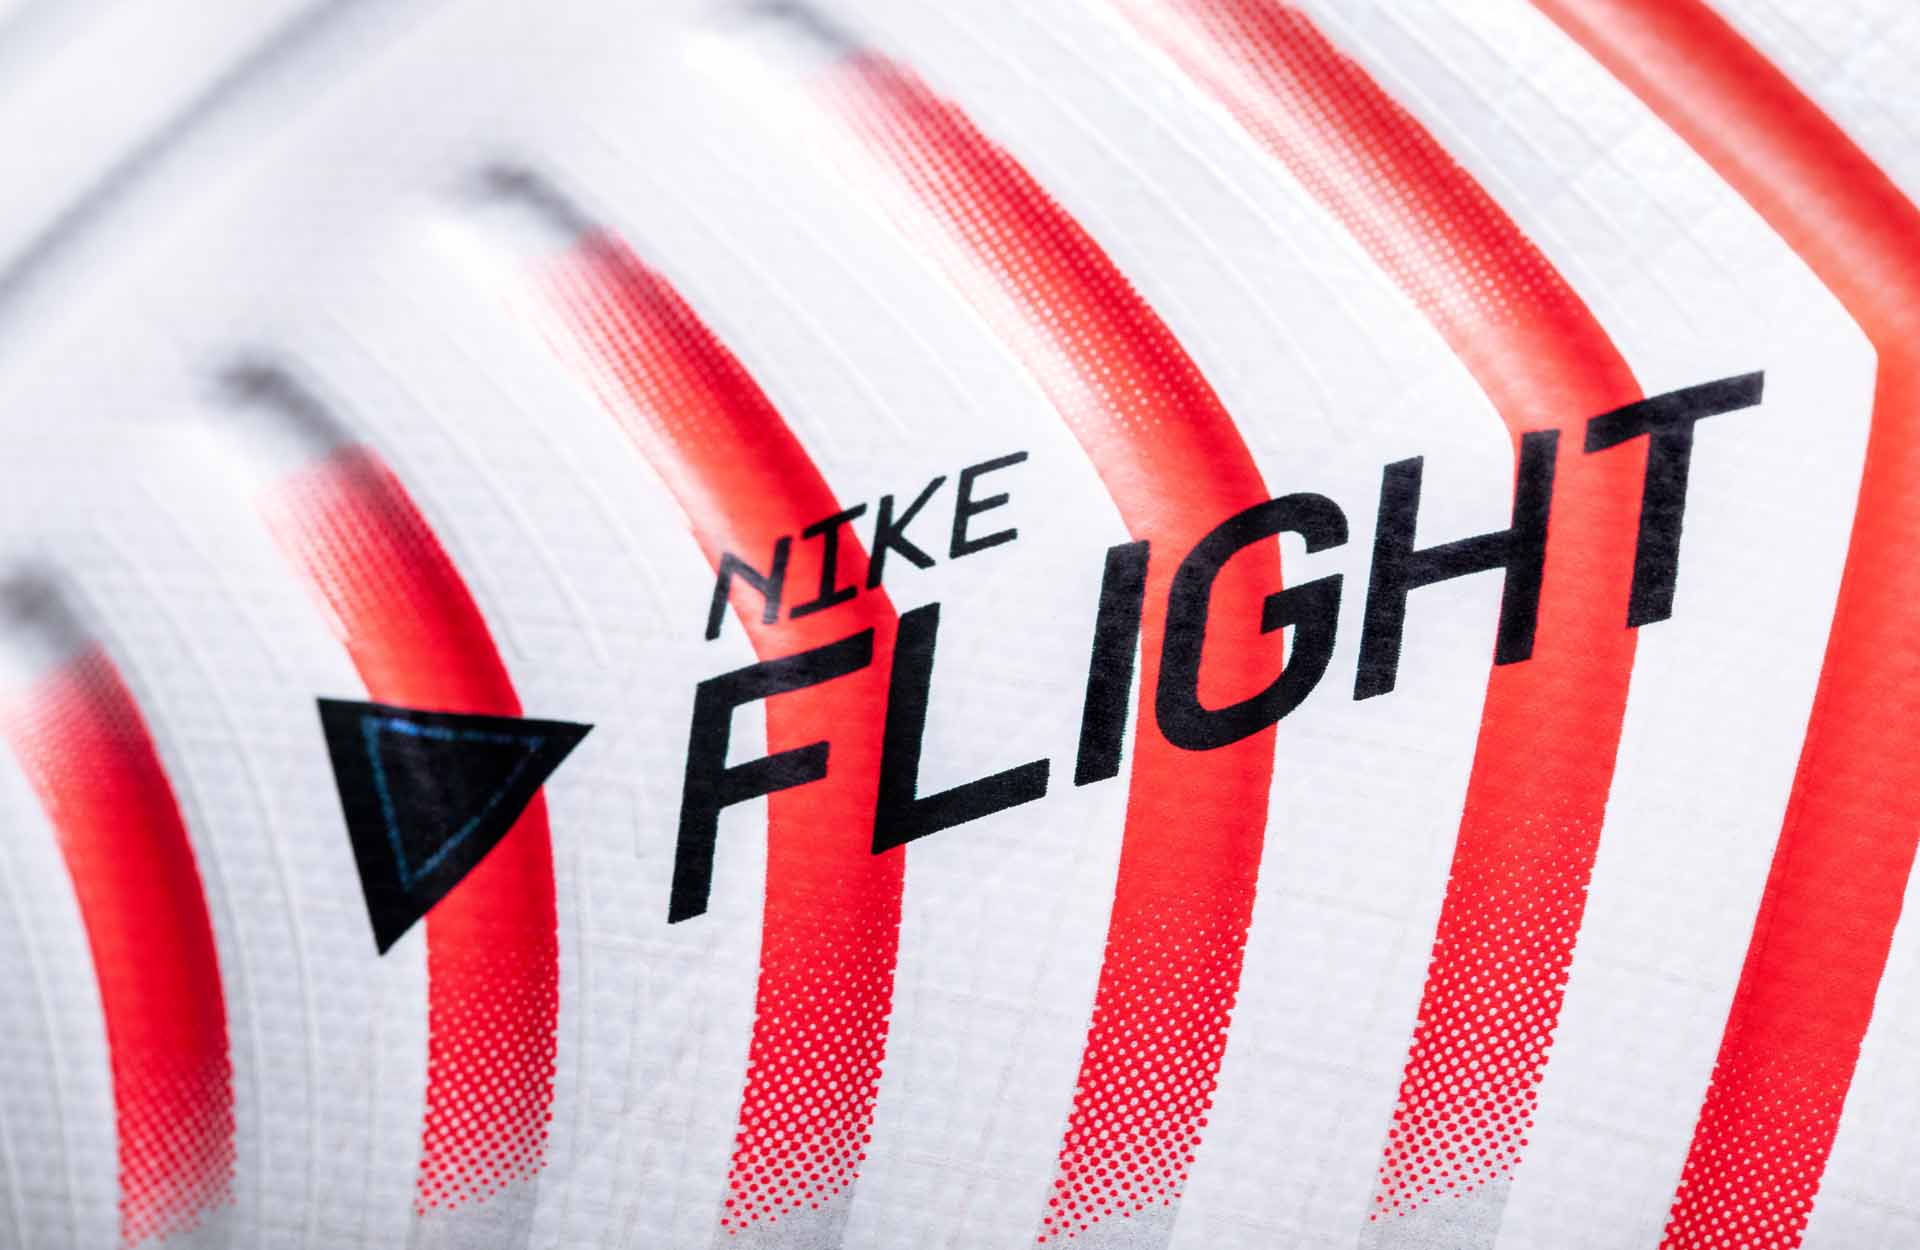 Công nghệ Nike FLIGHT với các đường rãnh hằn lên bề mặt quả bóng Nike